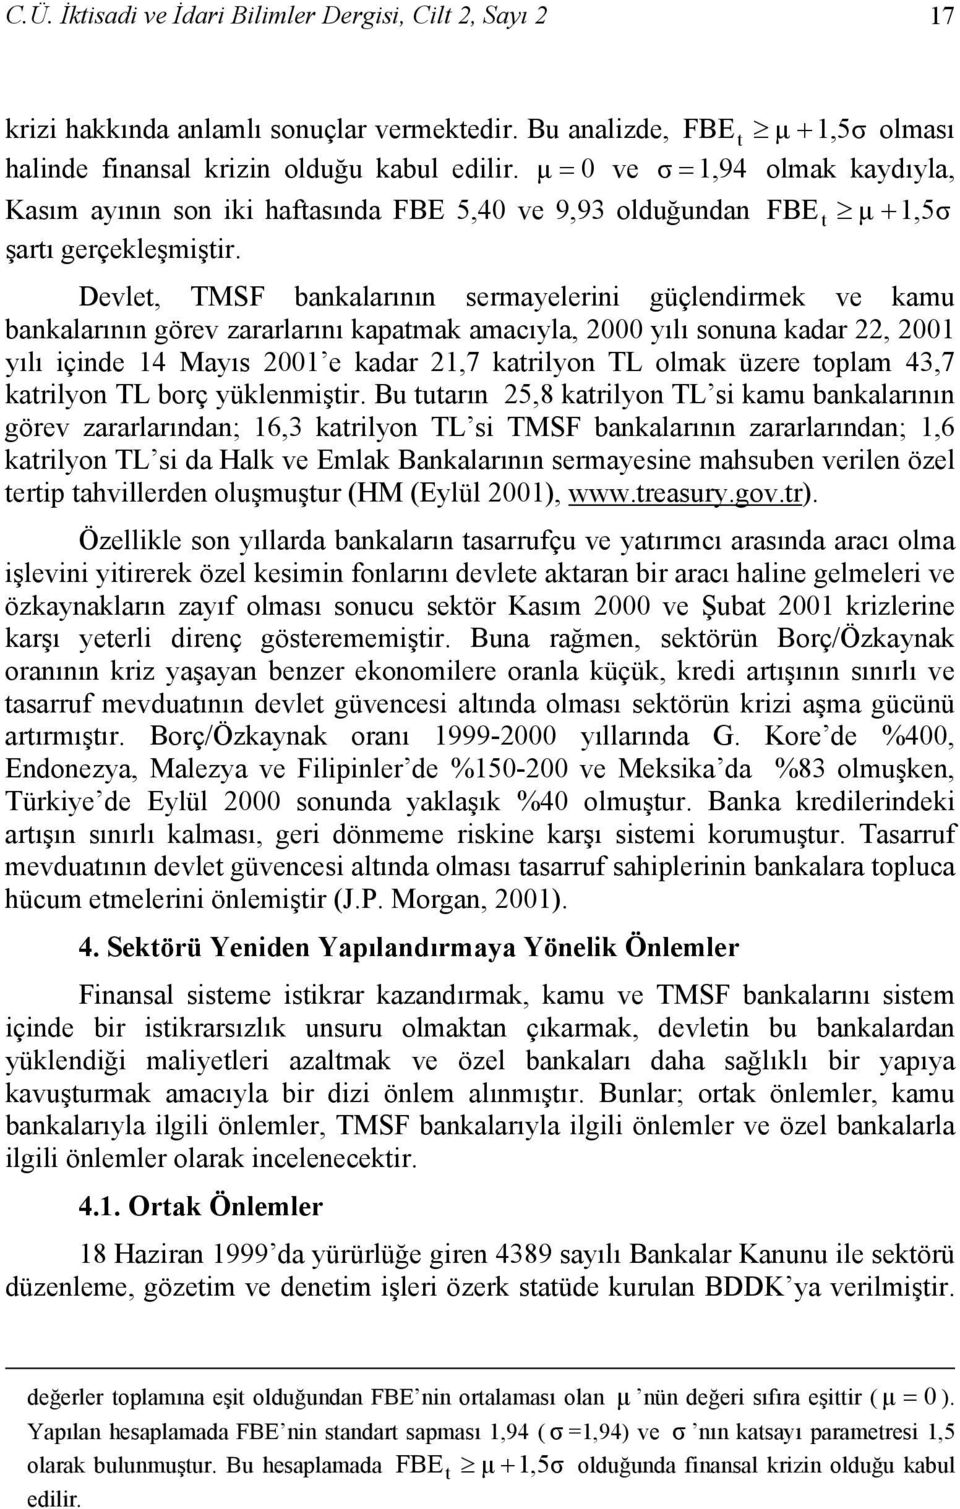 Devlet, TMSF bankalarının sermayelerini güçlendirmek ve kamu bankalarının görev zararlarını kapatmak amacıyla, 2000 yılı sonuna kadar 22, 2001 yılı içinde 14 Mayıs 2001 e kadar 21,7 katrilyon TL